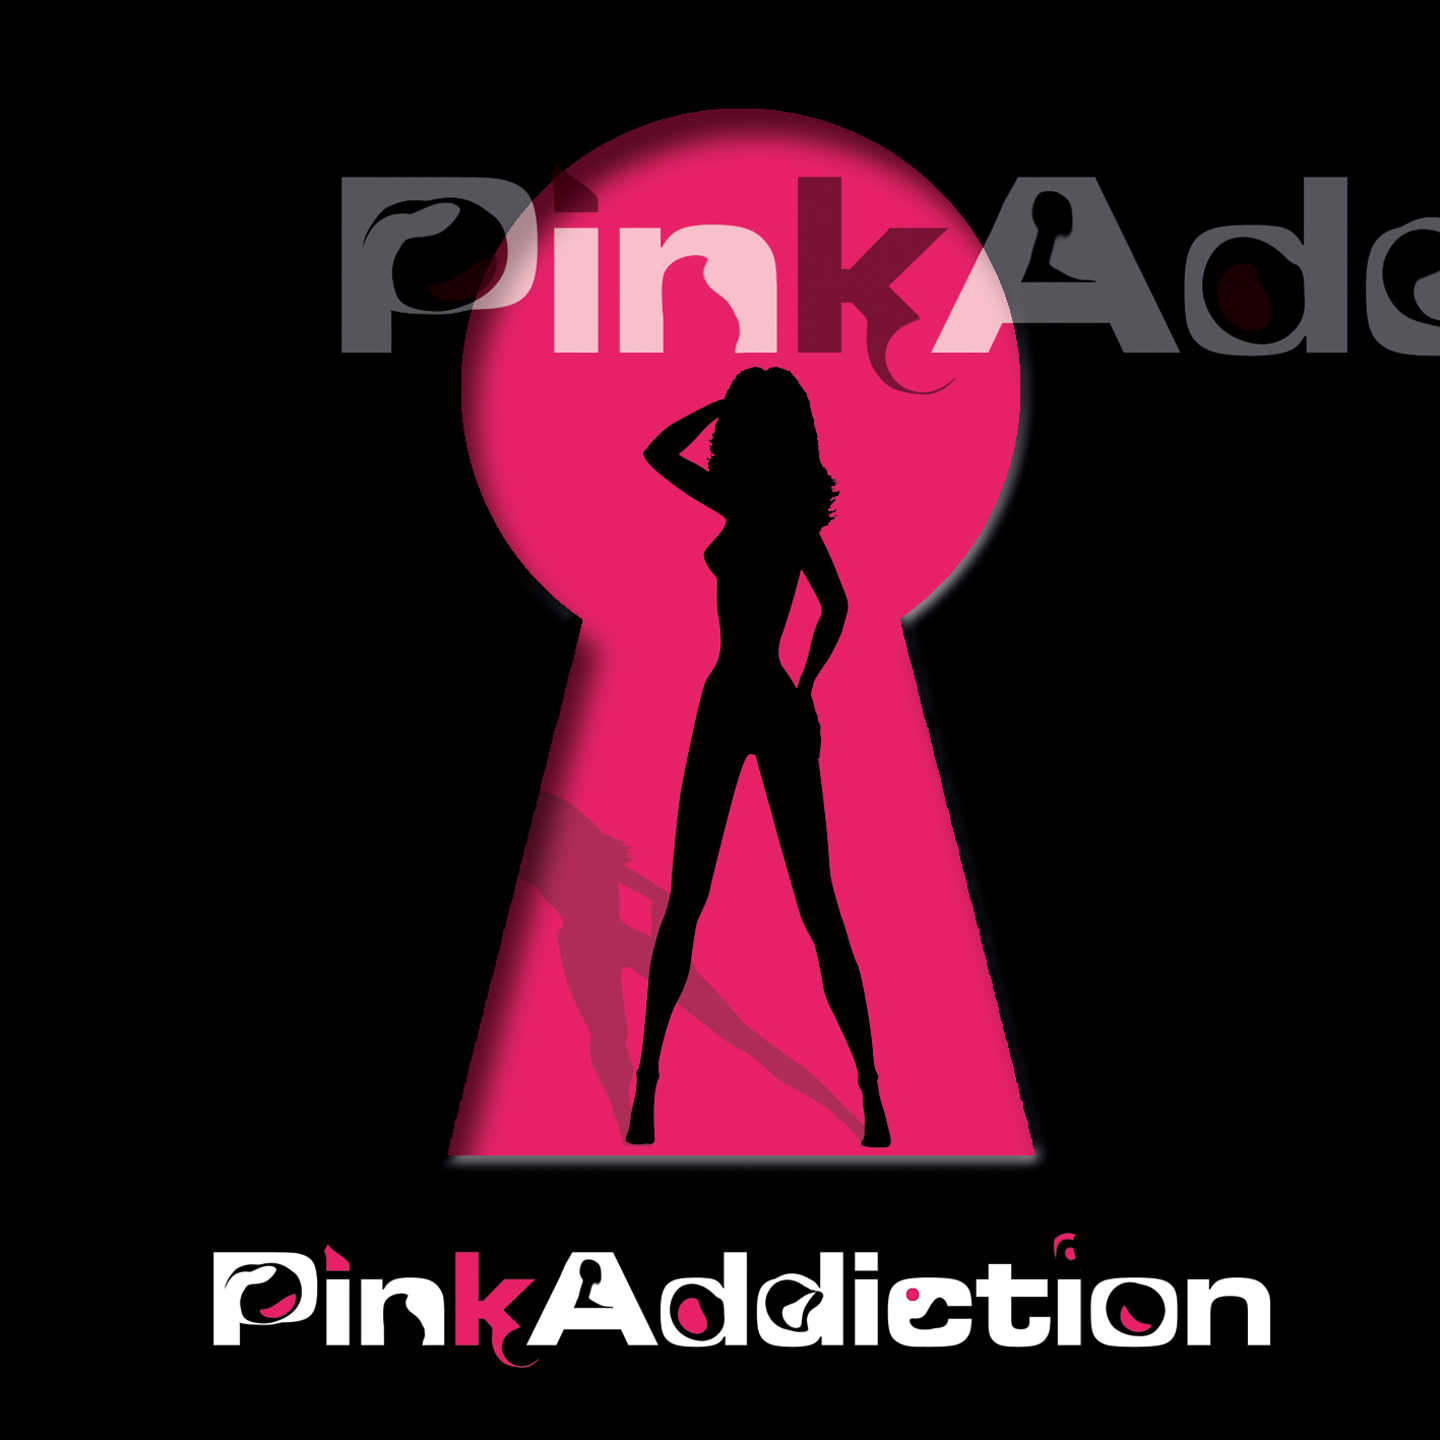 PINKADDICTION_PinkAddiction_COVER-SAMPLE